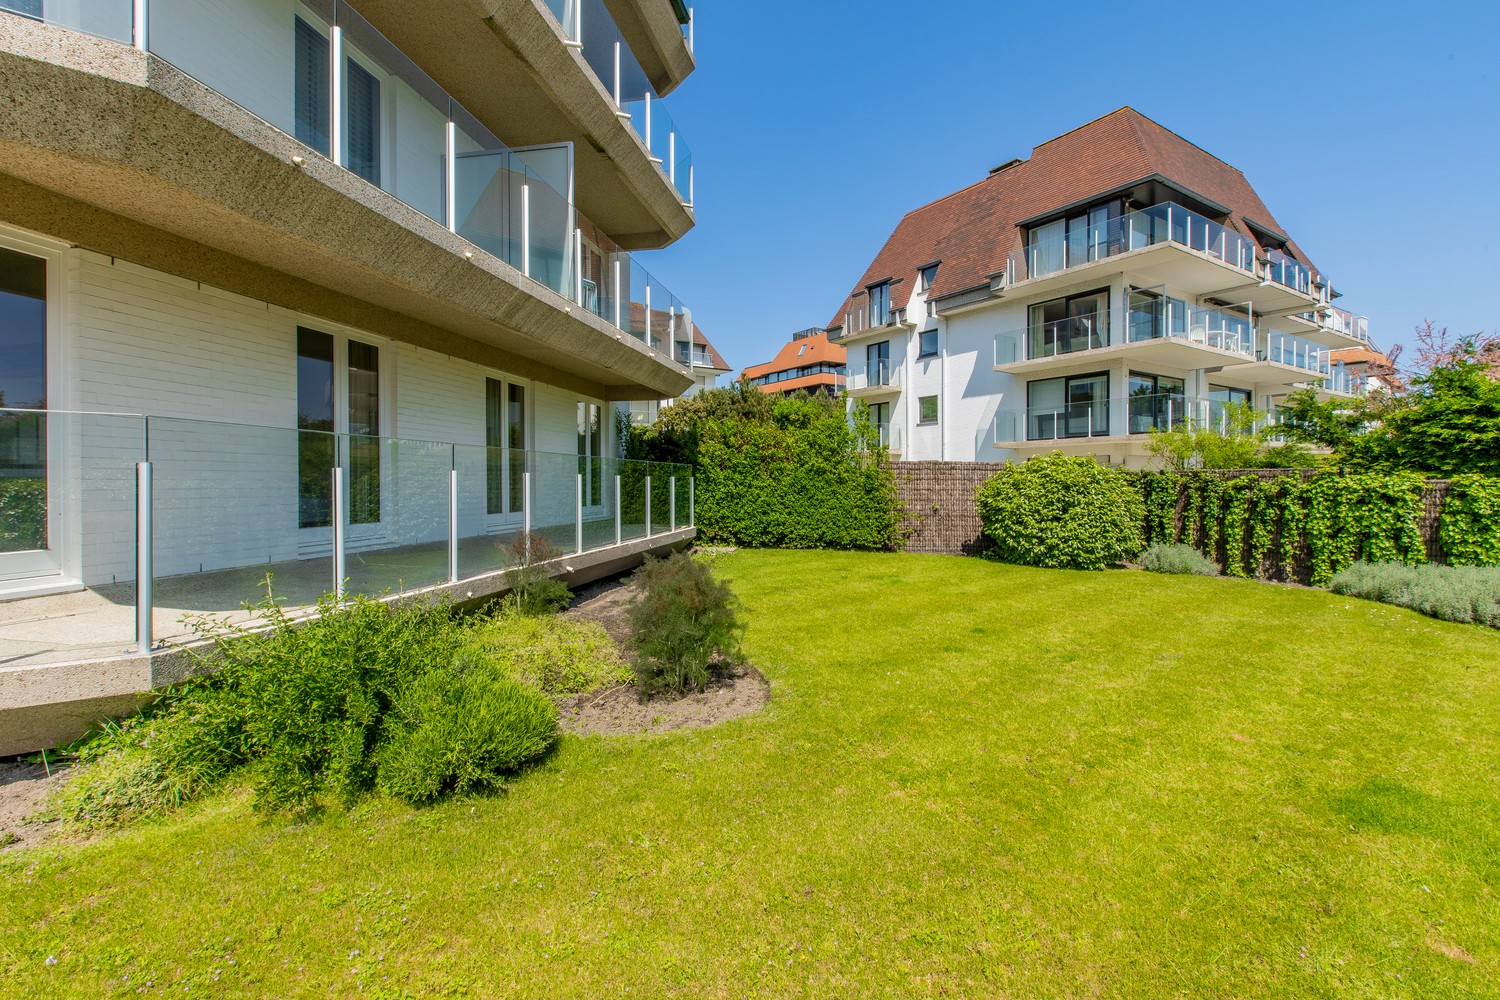 Lichtrijk hoek-appartement van ruim 180m2, rustig gelegen in een standingvolle villaresidentie, op enkele stappen van de zeedijk Albertstrand en de Royal Zoute Tennis Club, ter hoogte van de Wandeldij 